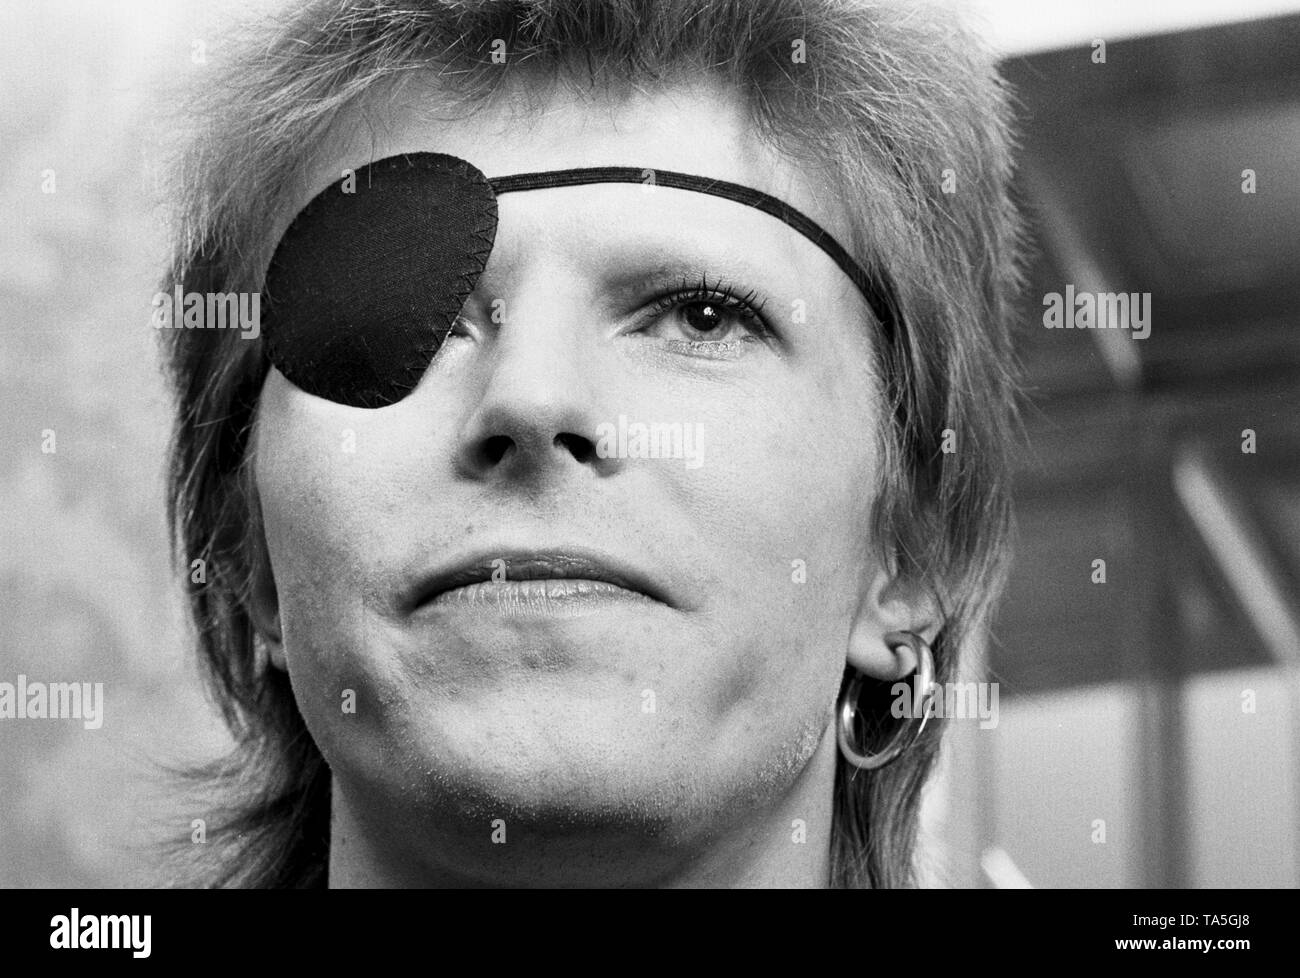 Amsterdam, Pays-Bas - 13 février : David Bowie, le port d'un pansement oculaire procède à une conférence de presse à l'Hôtel Amstel, à Amsterdam, le 13 février 1974 (photo de Gijsbert Hanekroot) Banque D'Images